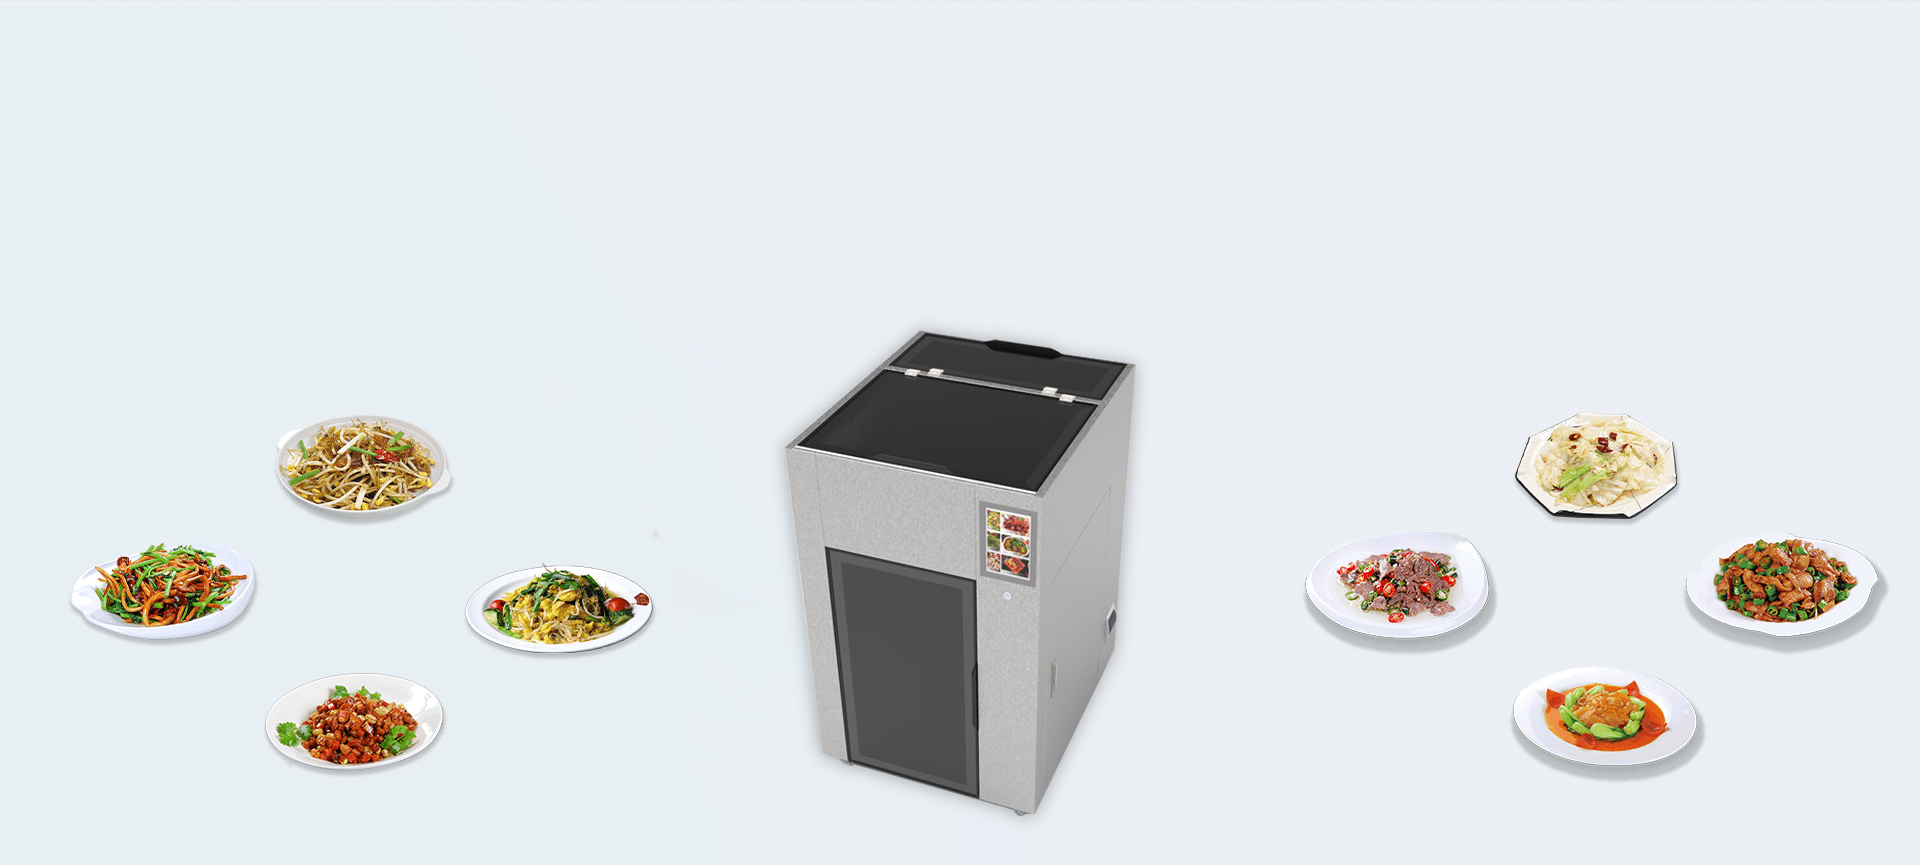 共享烹饪机器人KZWGX-100